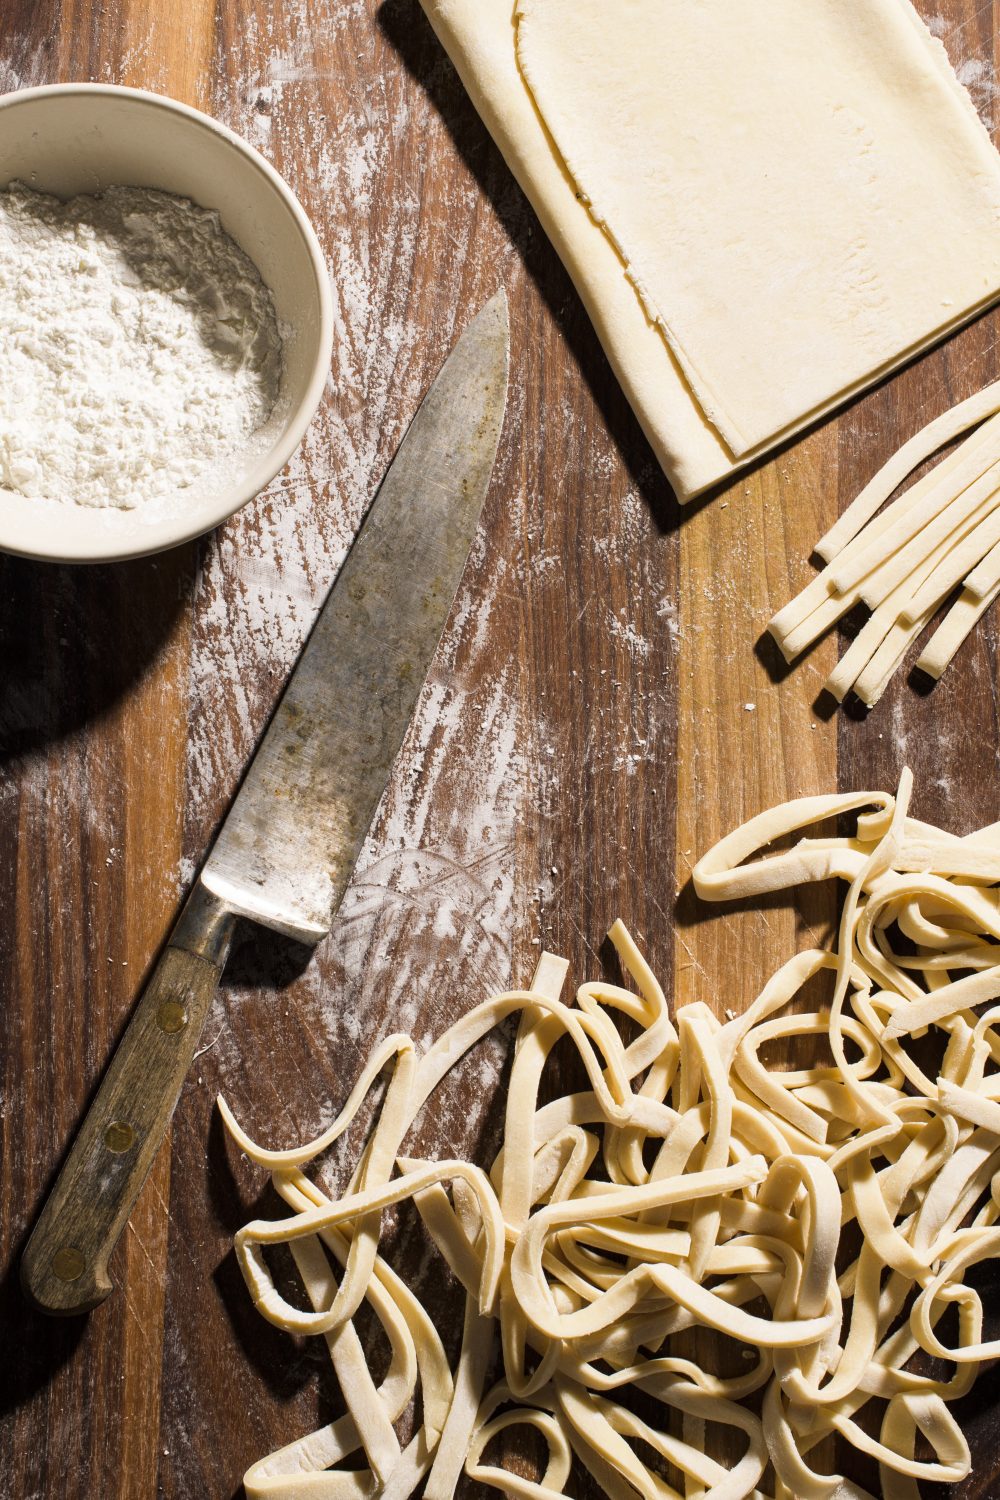 Homemade udon noodles v